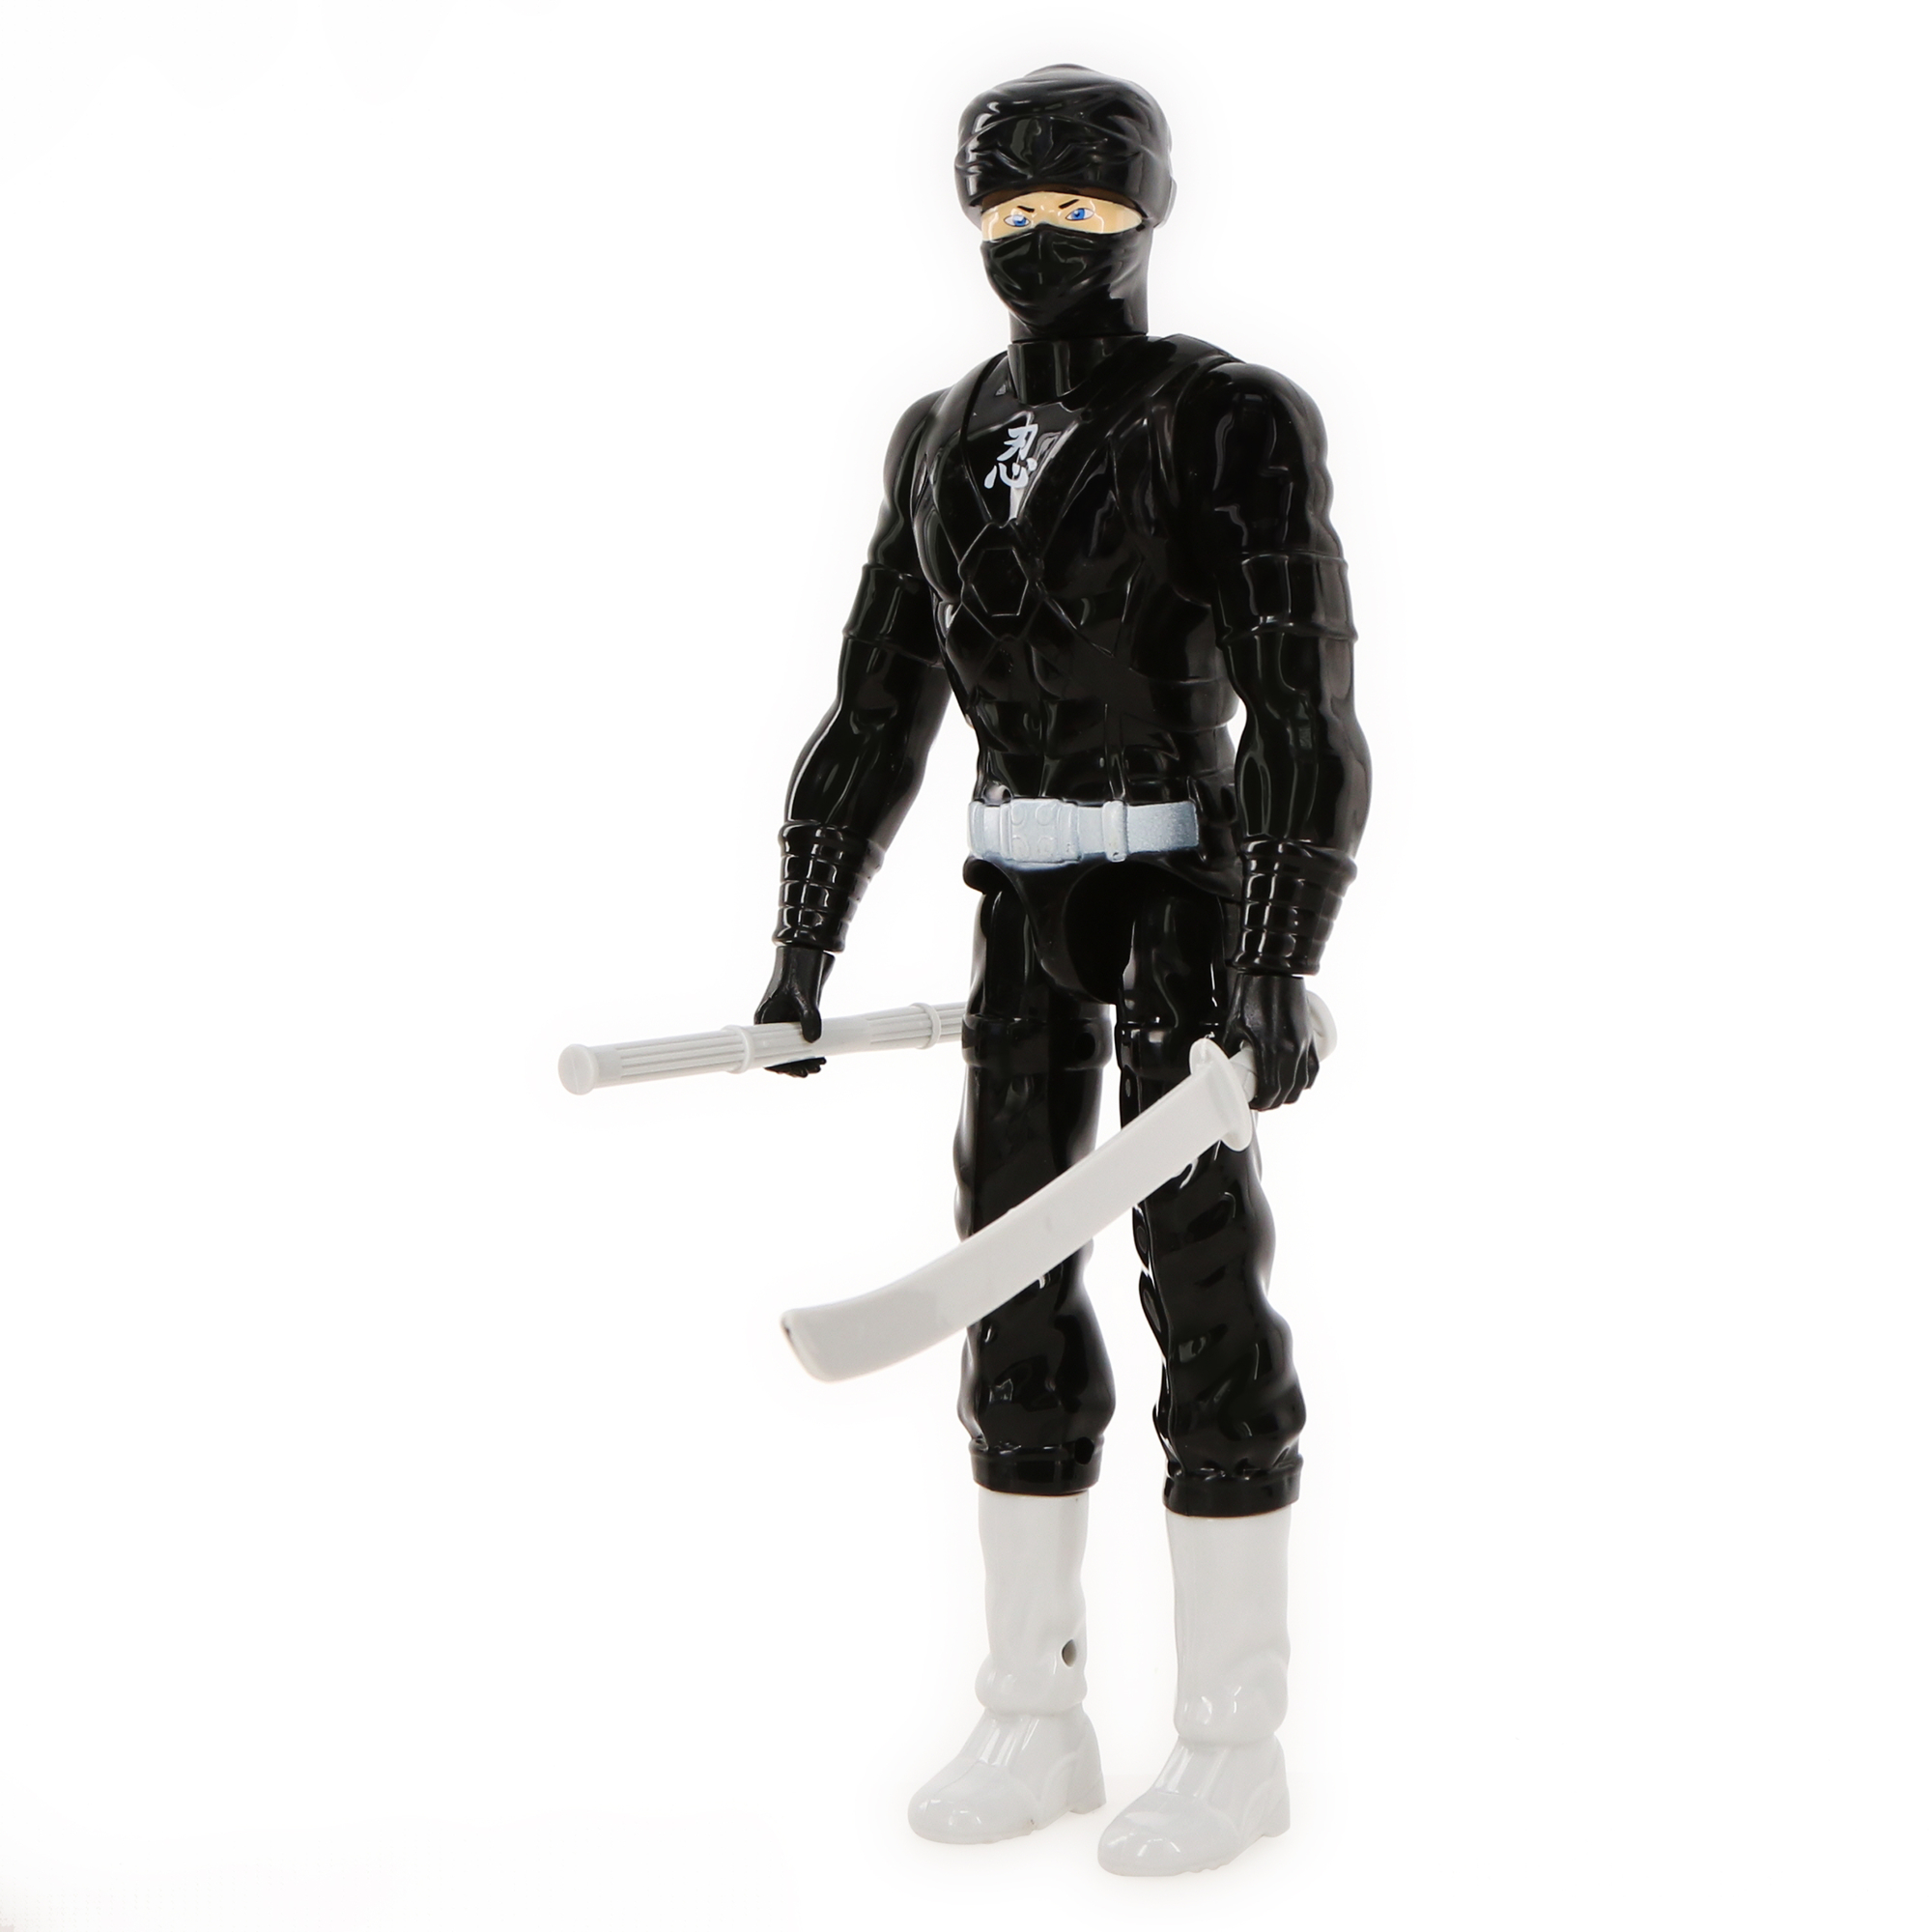 ninja action figure 12in